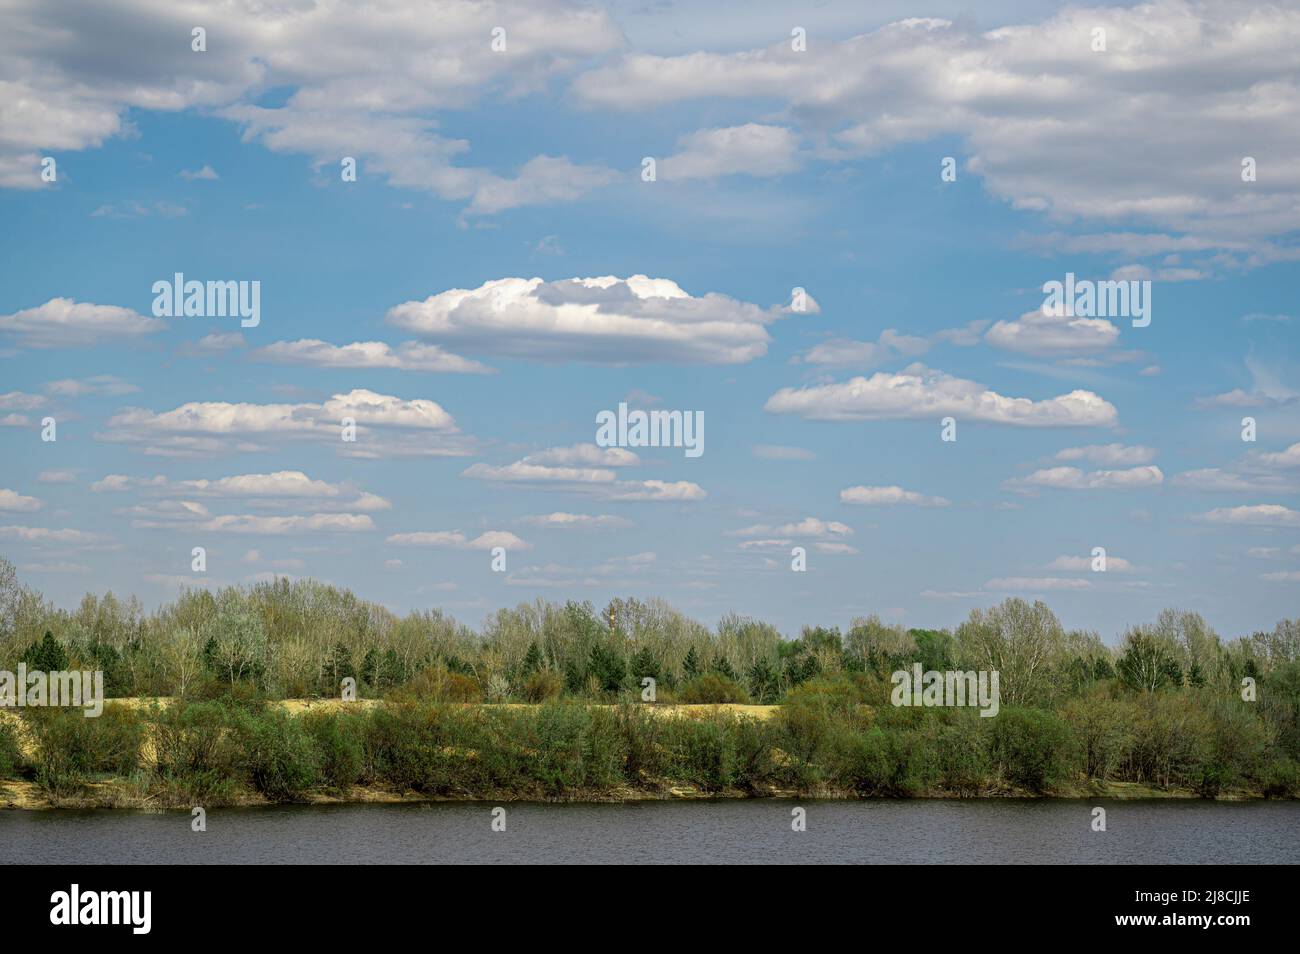 Landschaft blauer Himmel mit weißen, flauschigen Wolken, grünen Büschen und einem Fluss oder See im Vordergrund. Schöner blauer Himmel und große weiße, flauschige Wolken Stockfoto